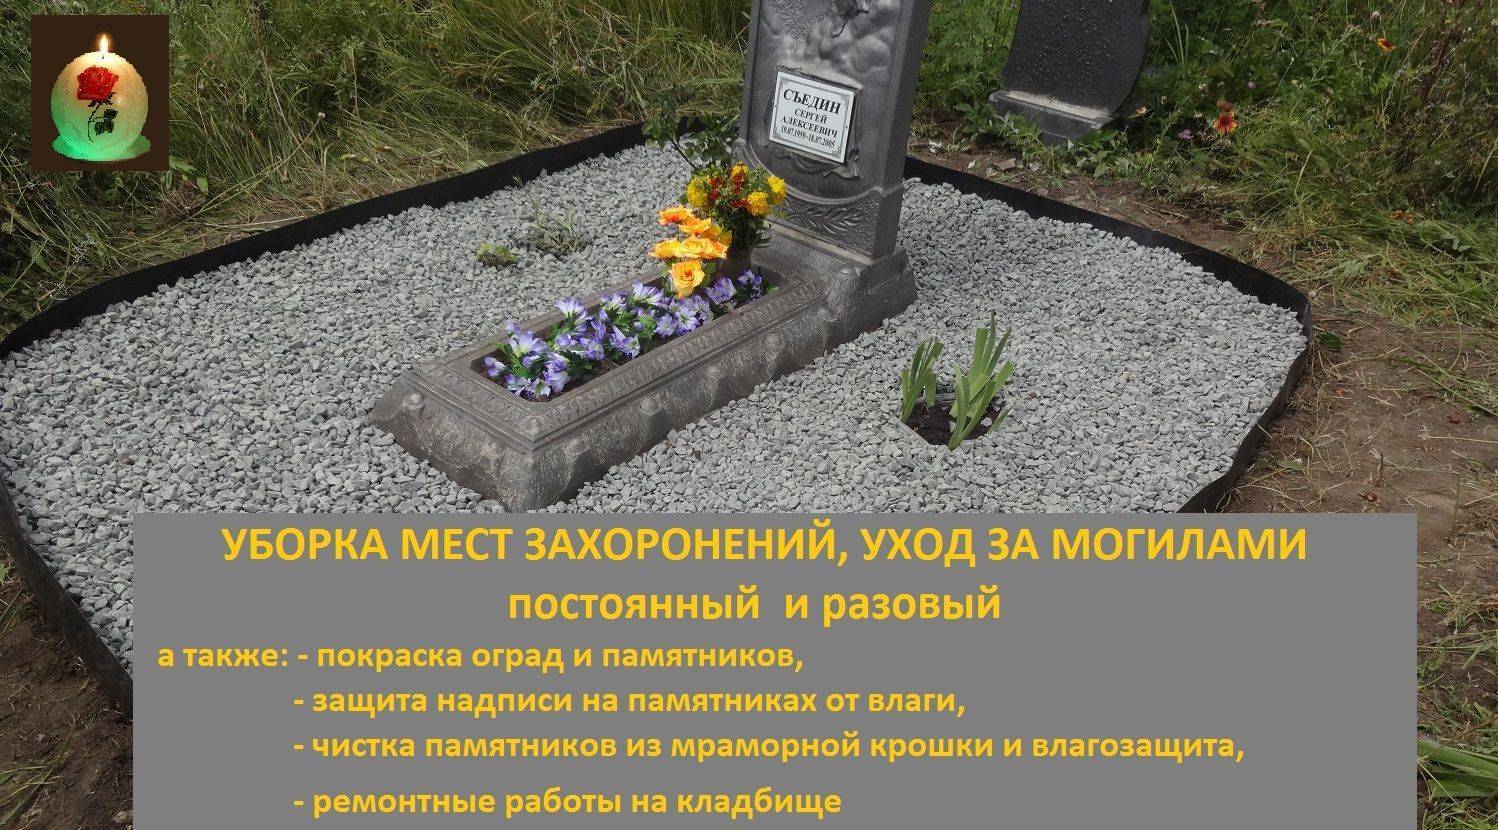 Как открыть частное кладбище в россии: документы, бизнес-план, вложения